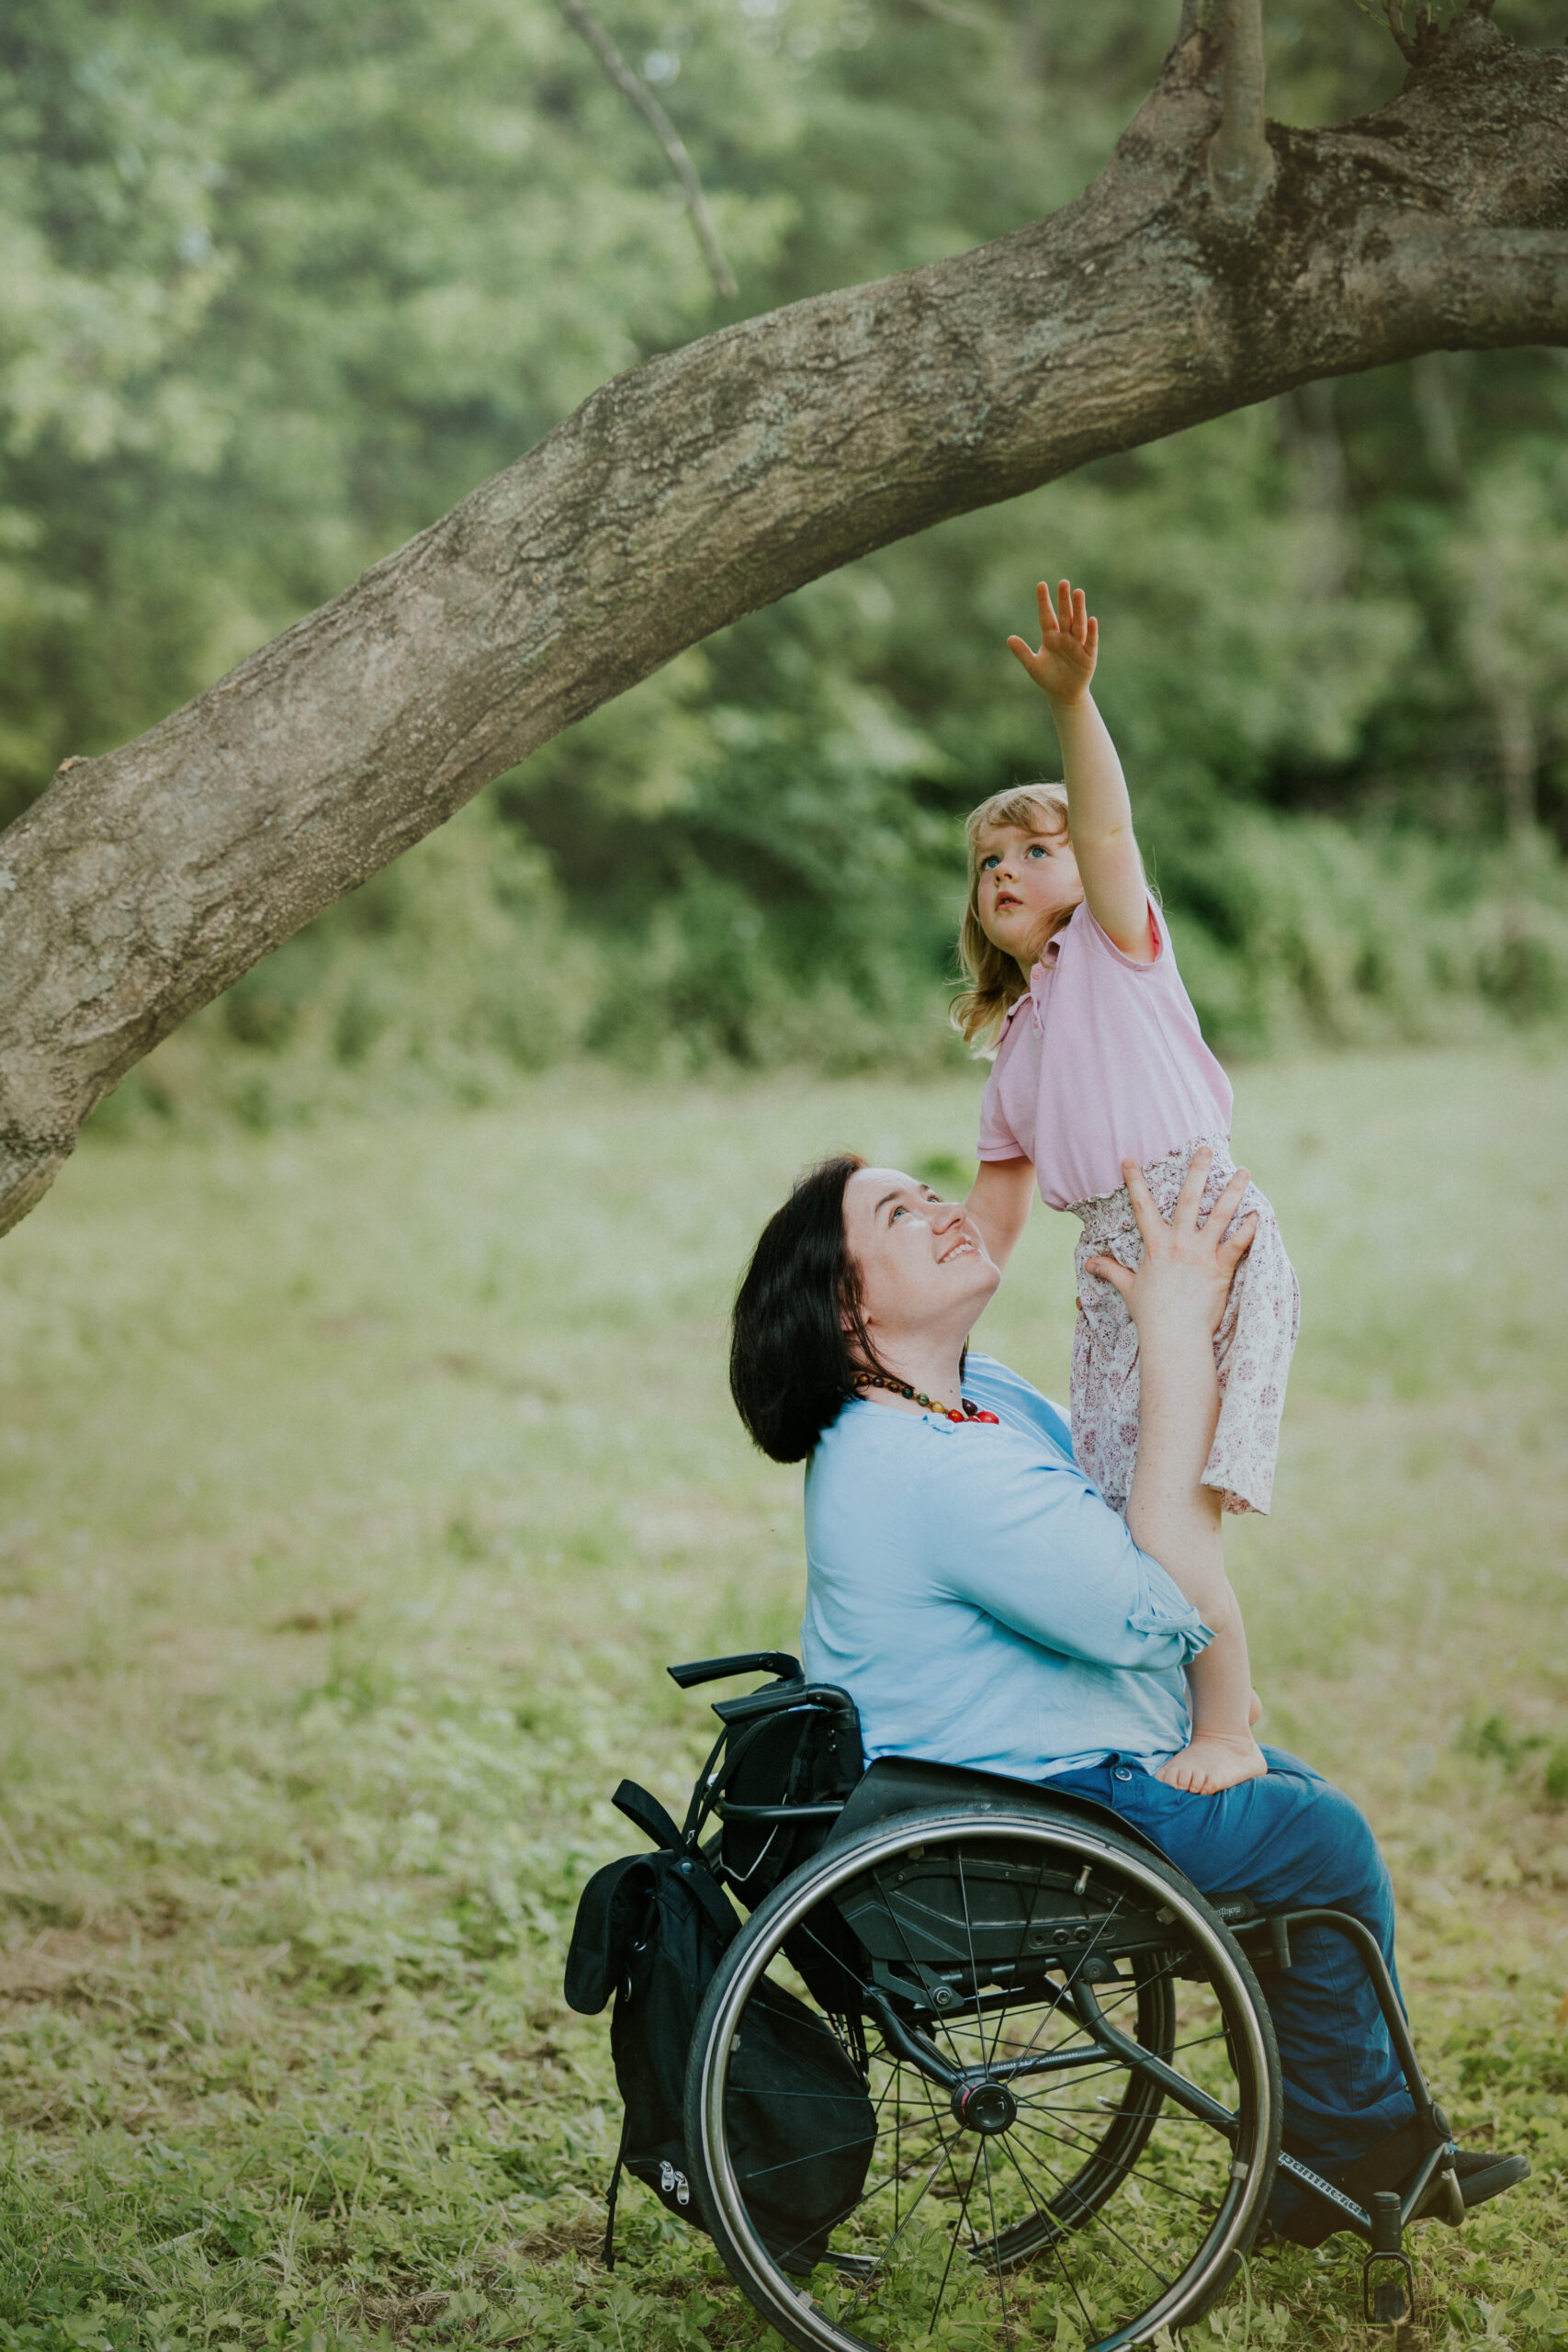 Na zdjęciu Małgorzata Żbikowska na wózku trzyma na kolanach swoją córeczkę. Dziewczynka stoi i sięga do gałęzi drzewa.